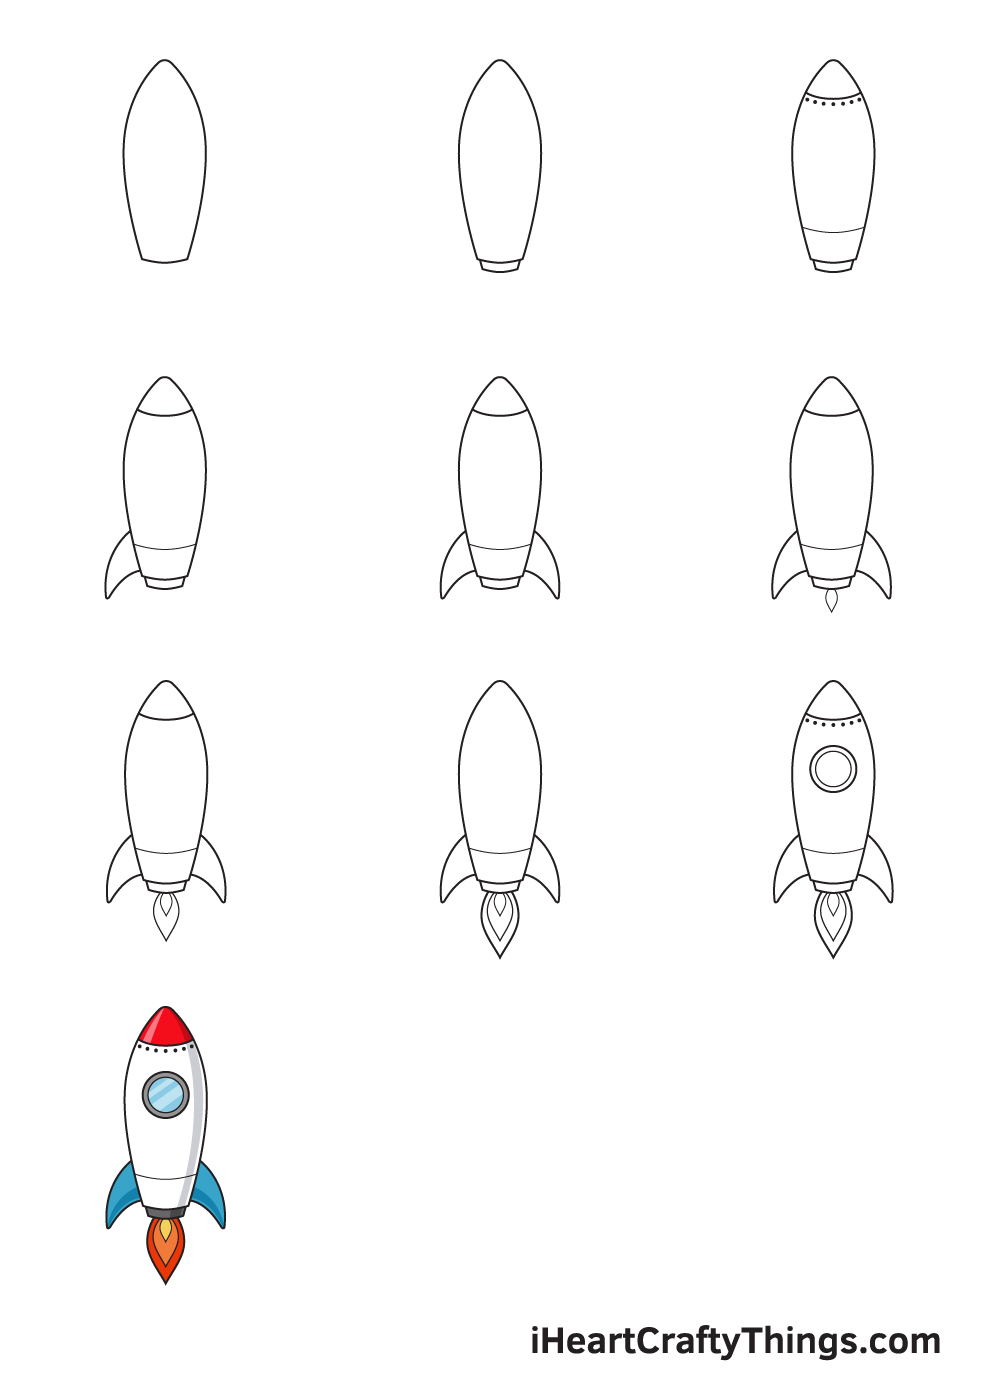 Drawing Rocket in 10 Easy Steps - Hướng dẫn chi tiết cách vẽ tên lửa đơn giản với 9 bước cơ bản